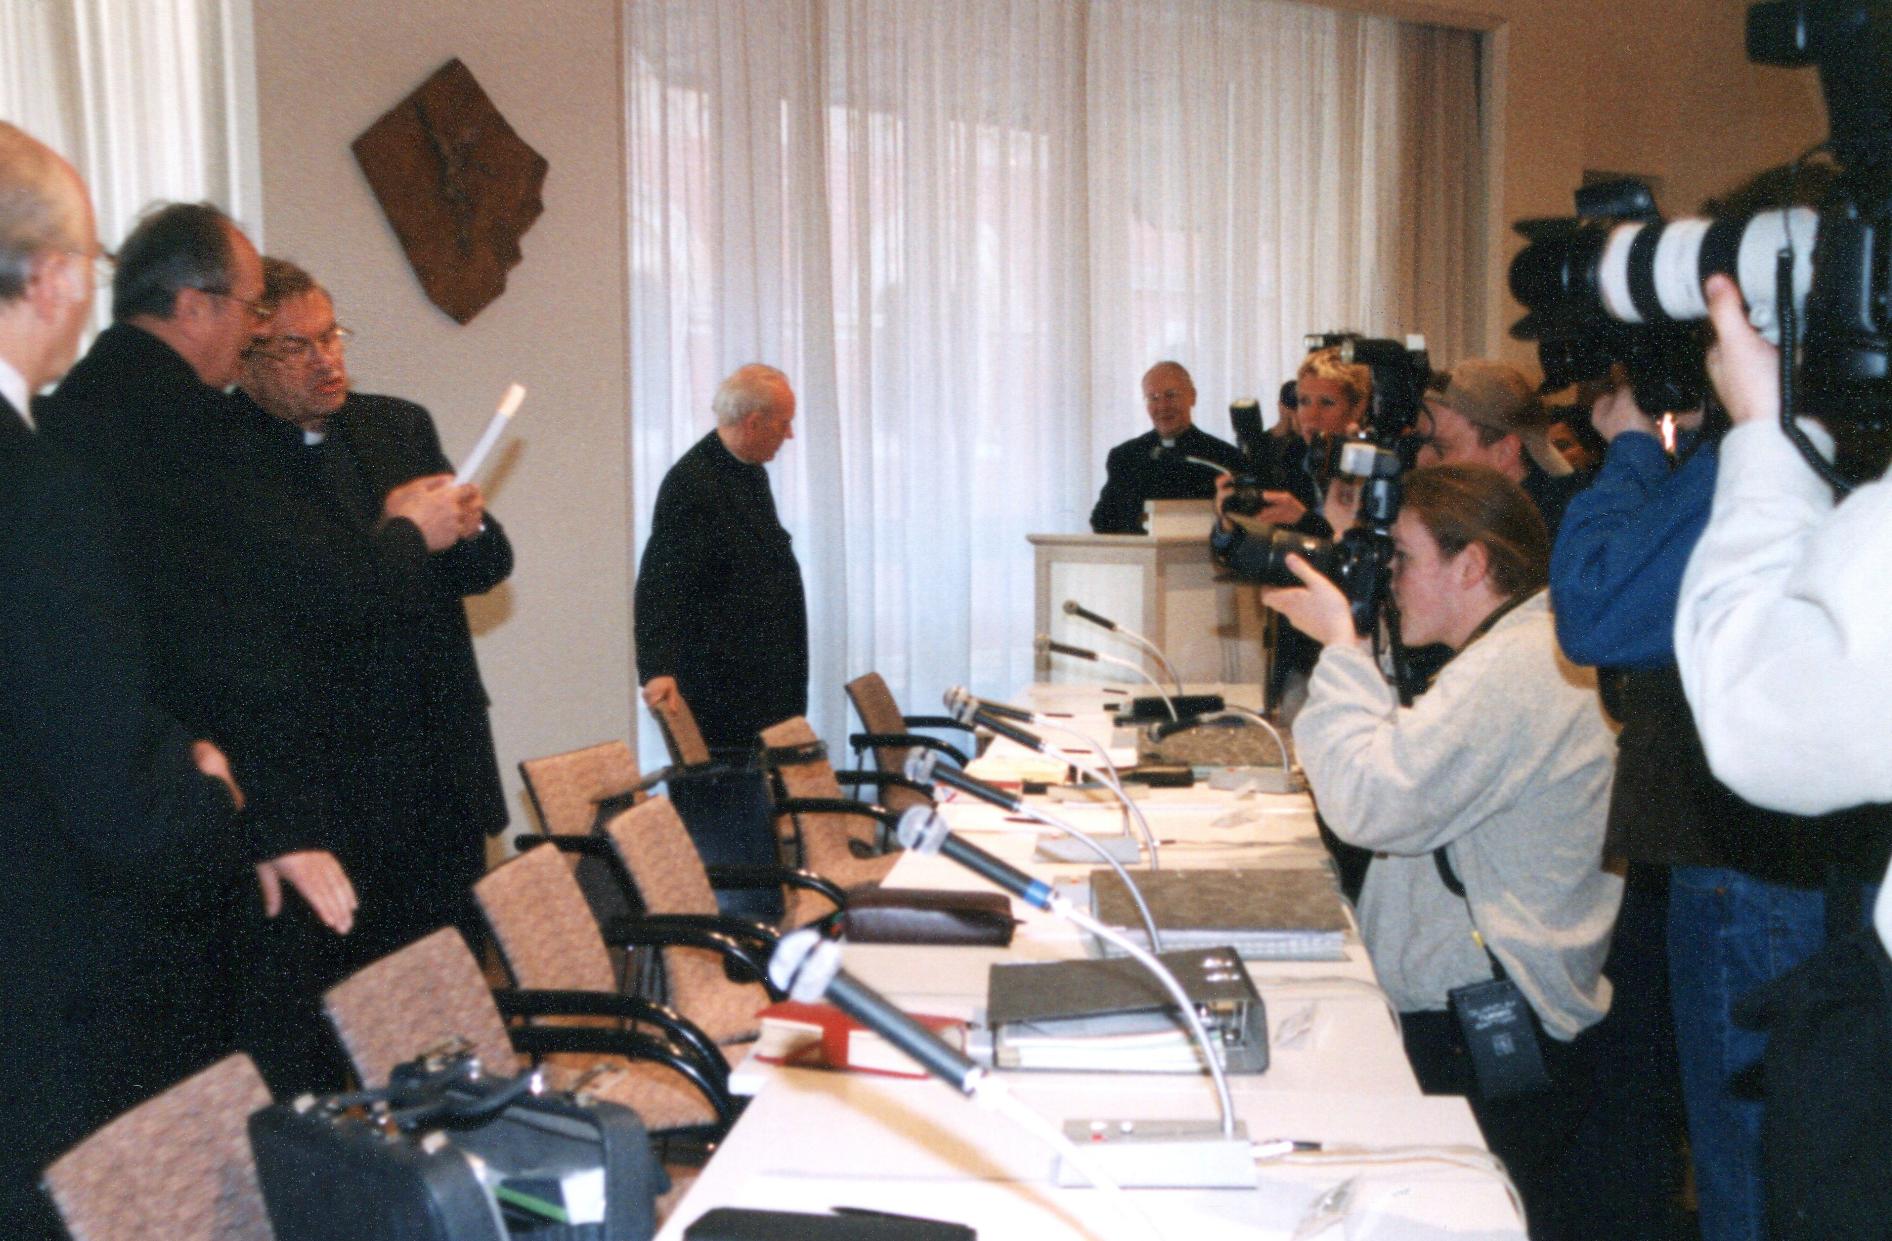 Mainz, 13.3.2000: Bereits vor 20 Jahren war das mediale Interesse an der Frühjahrs-Vollversammlung groß. (c) Bistum Mainz / Nichtweiß